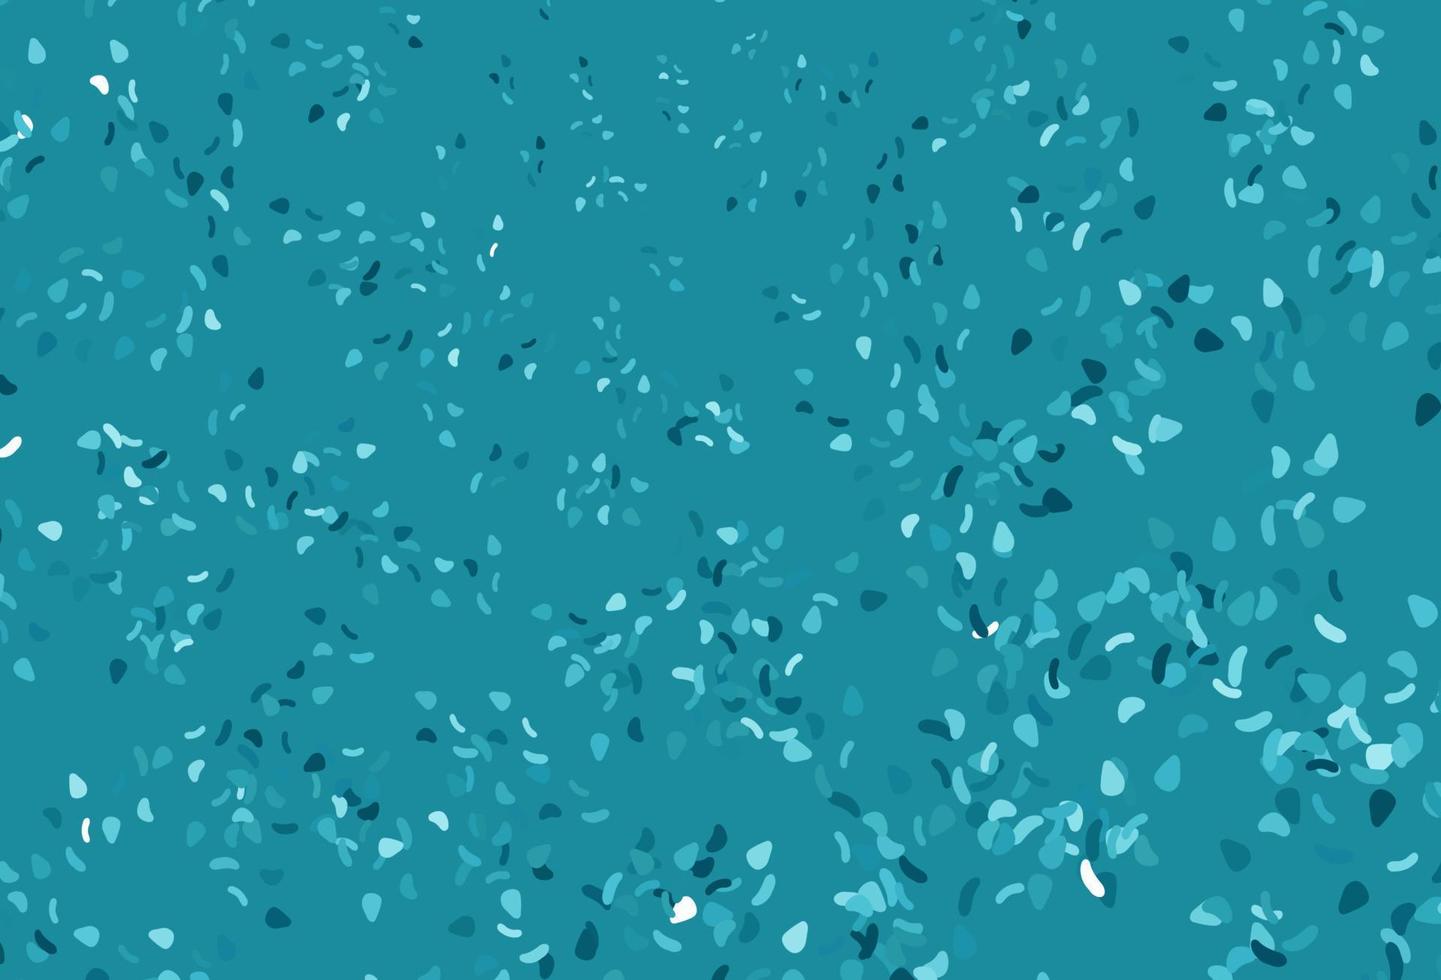 motif vectoriel bleu clair avec des formes chaotiques.